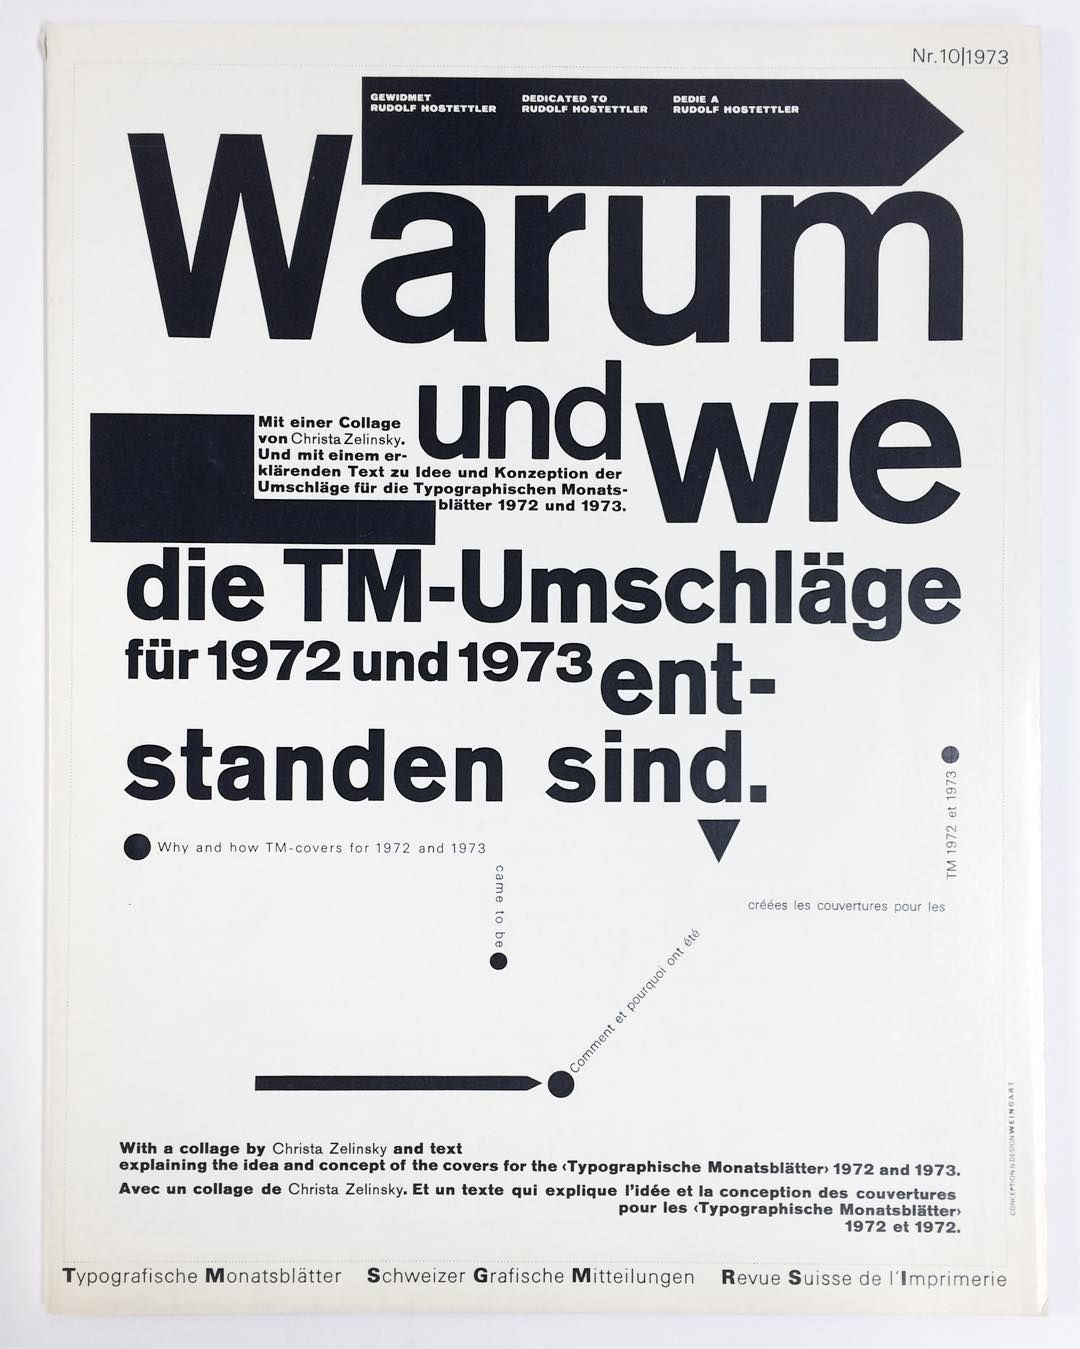 Wolfgang Weingart: Cover design for Typografische Monatsblätter Schweizer Grafische Mitteilungen Revue suisse de l’Imprimerie Nr. 10, 1973